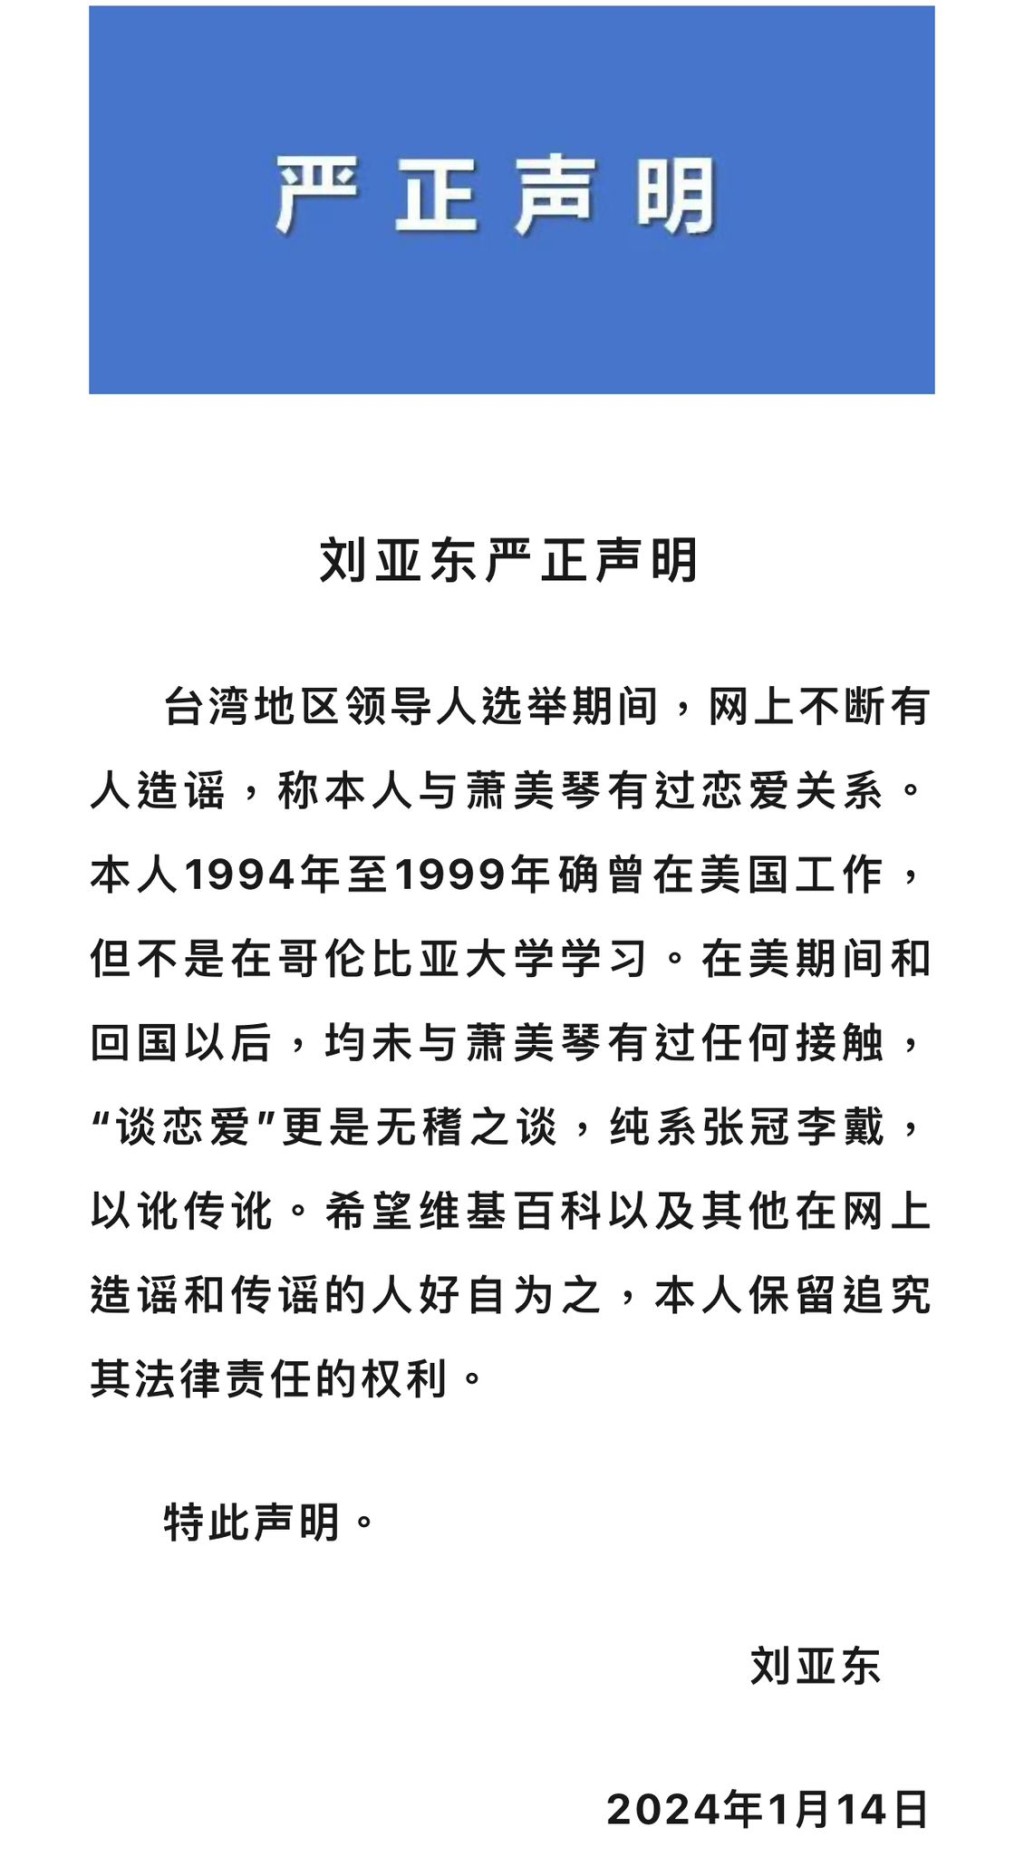 現任南開大學新聞與傳播學院院長劉亞東發表嚴正聲明，澄清從未與蕭美琴有過任何接觸。